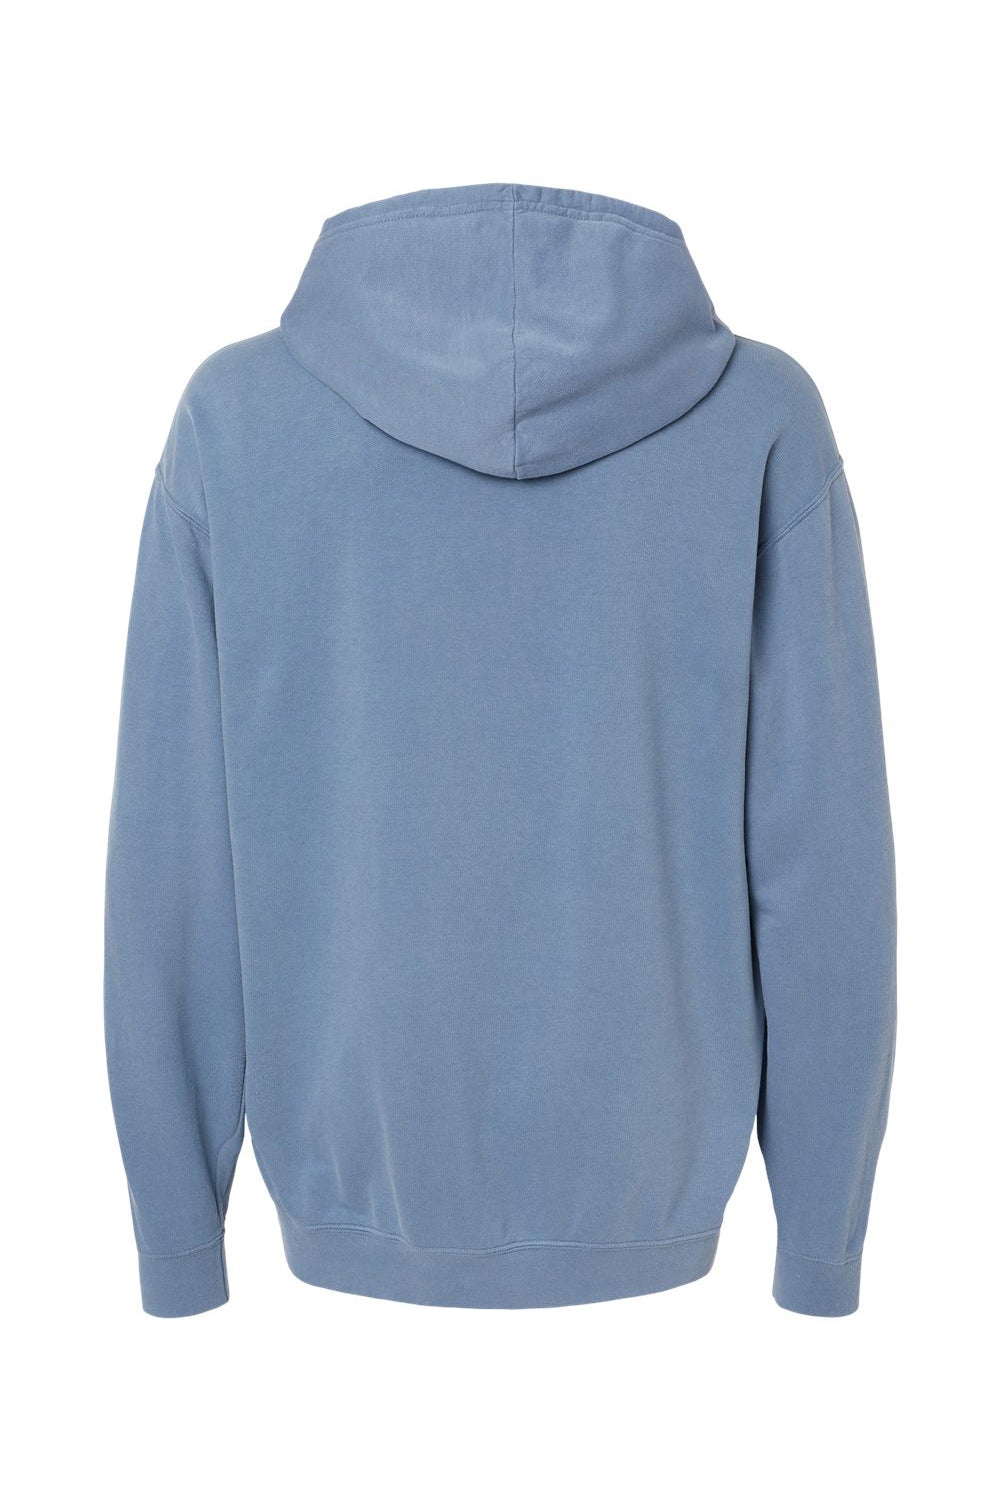 Comfort Colors 1467 Mens Garment Dyed Fleece Hooded Sweatshirt Hoodie Blue Jean Flat Back